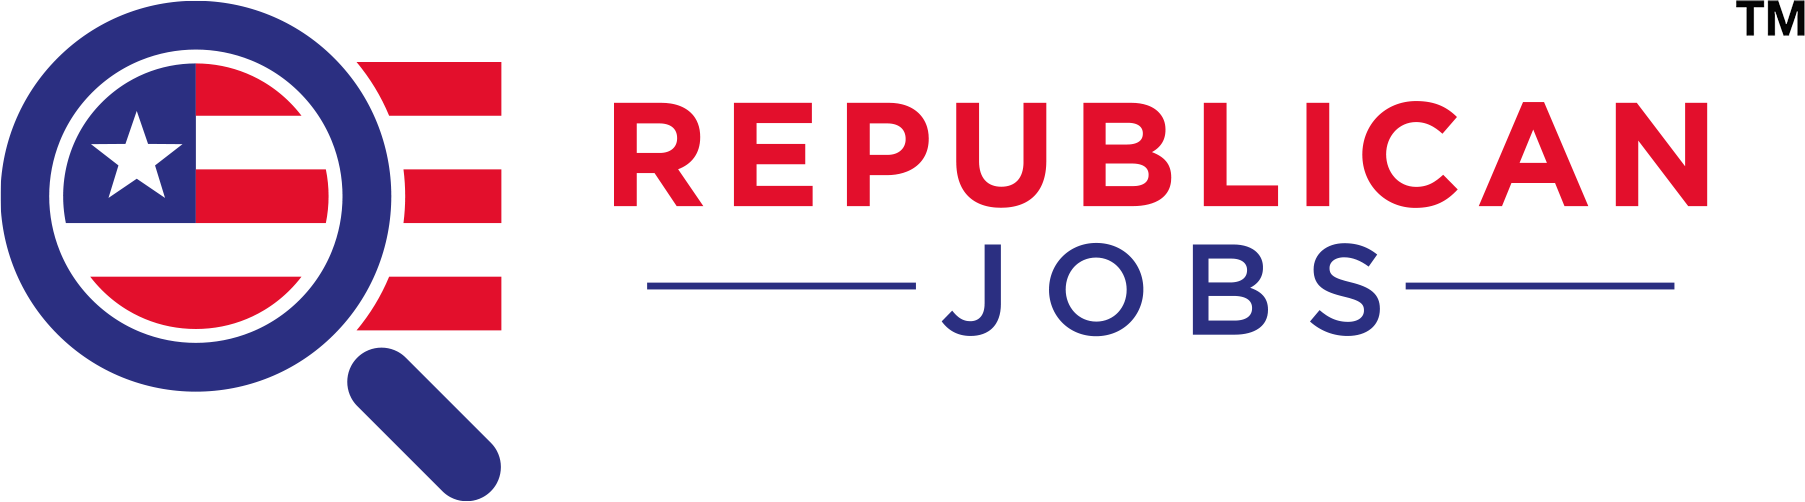 Republican jobs in Macon Georgia jobs